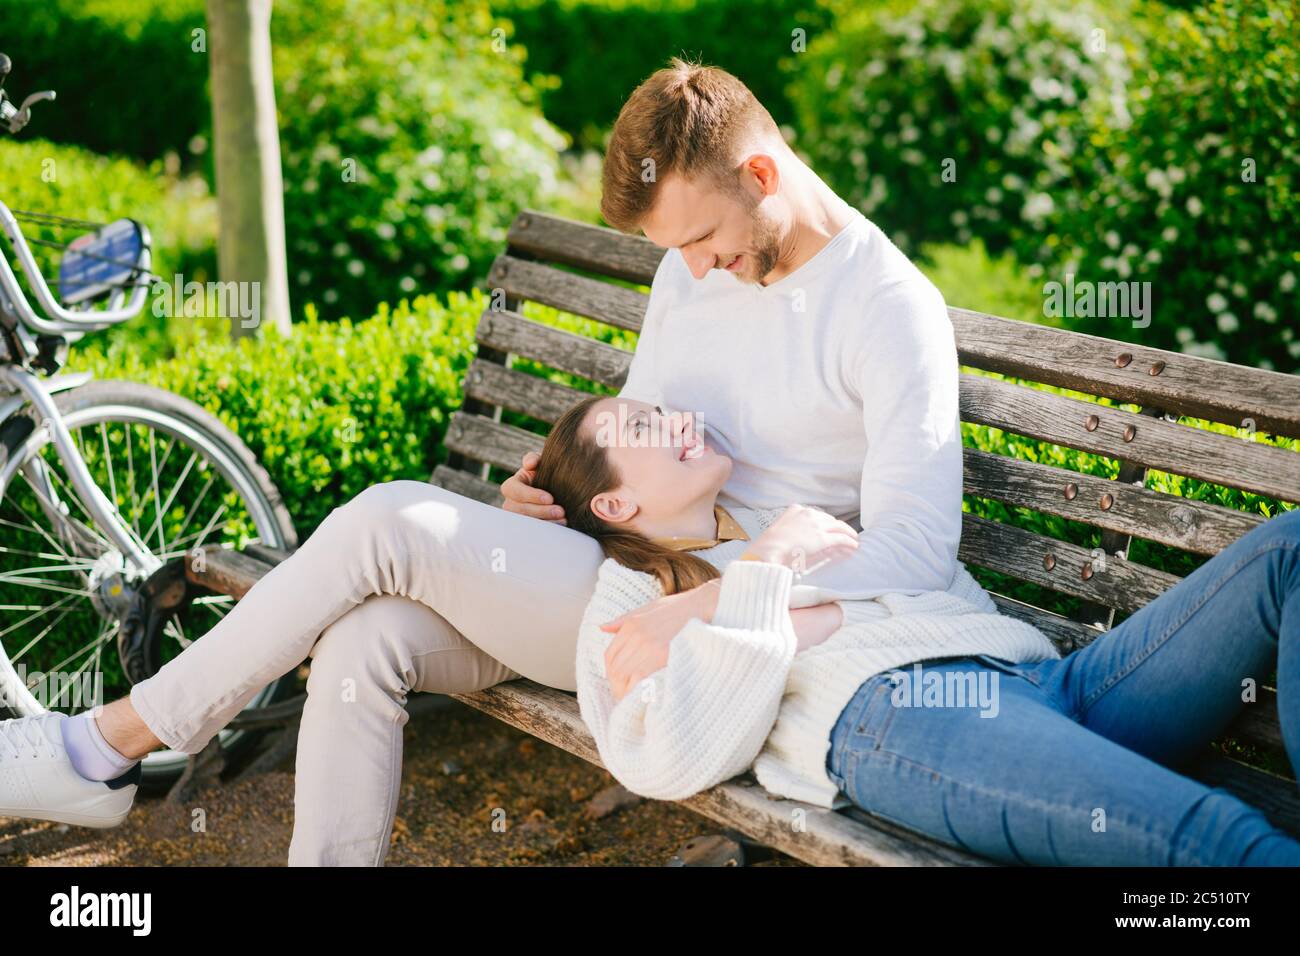 Mann, der auf einer Bank sitzt und eine liegende Frau umarmt Stockfoto